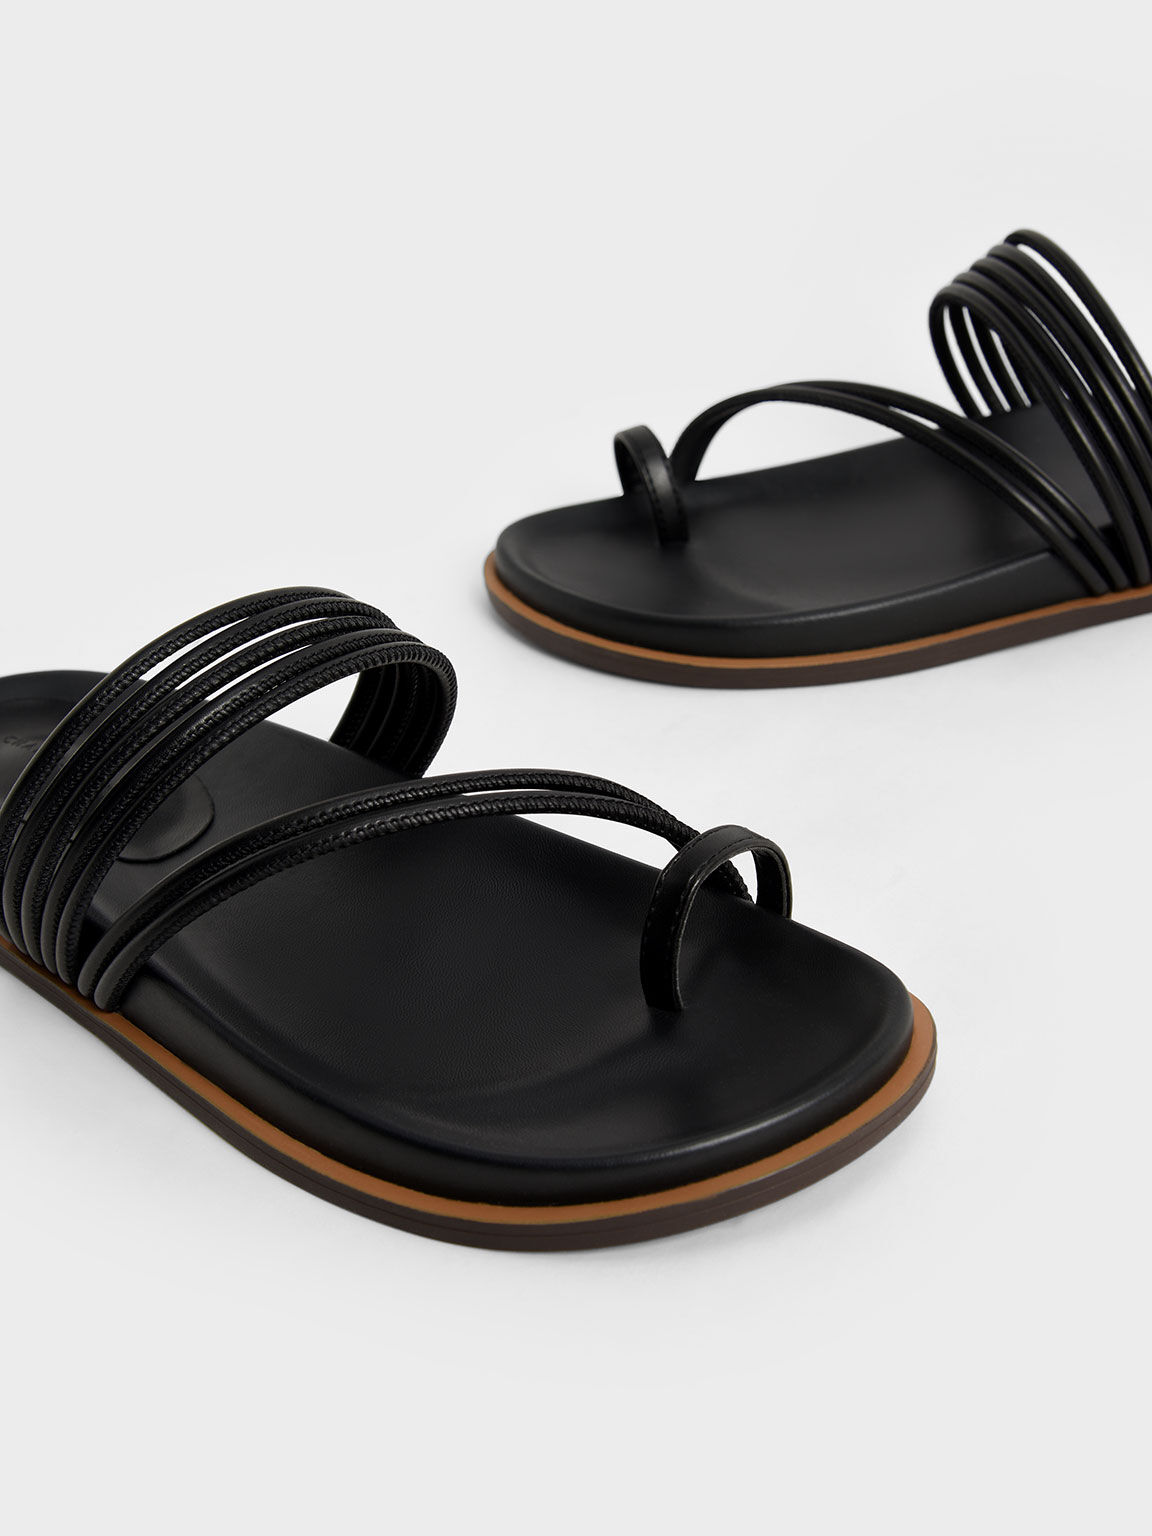 Toe Loop Strappy Flat Sandals, Black, hi-res